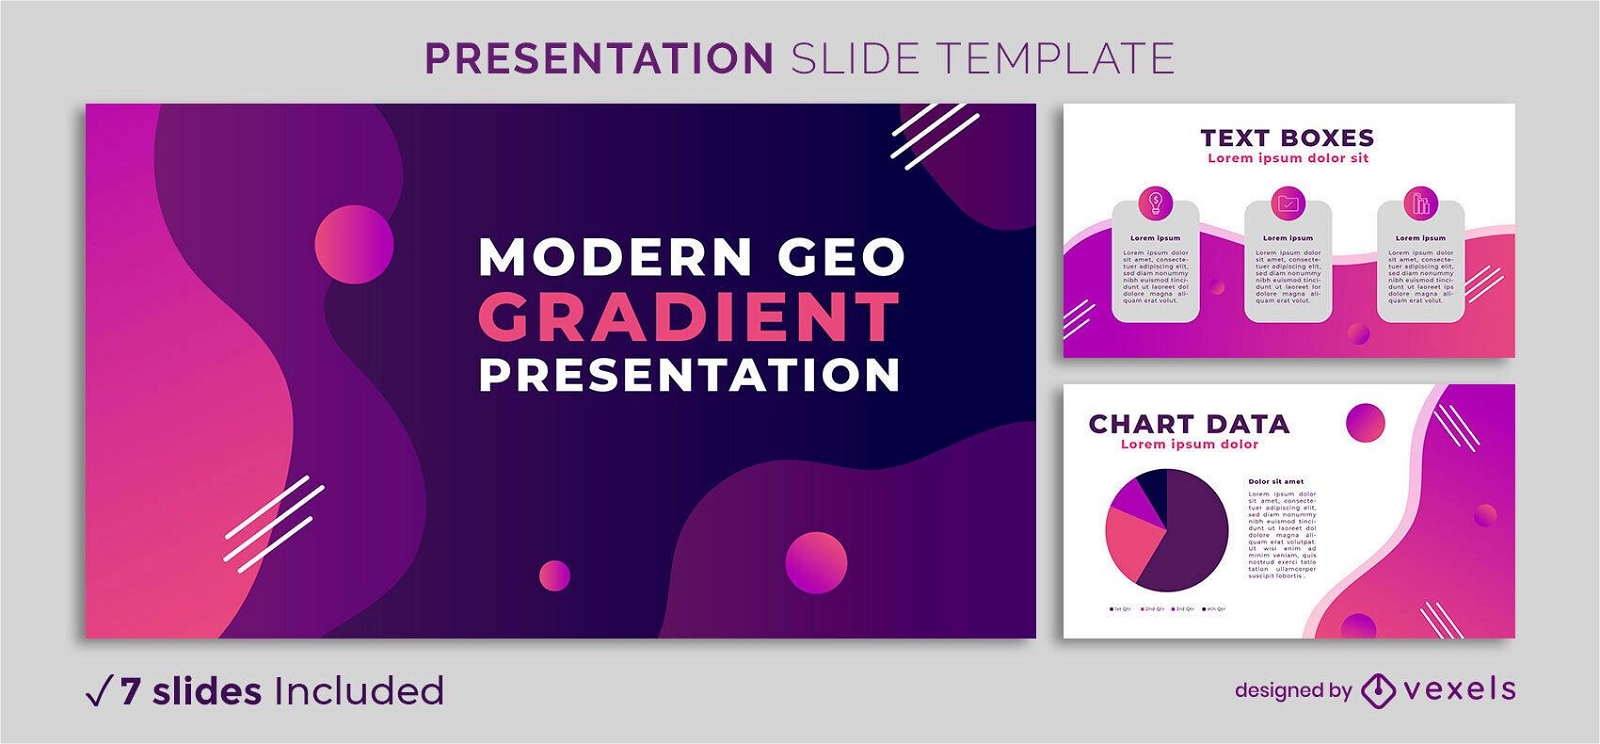 Modern Geo Gradient Presentation Template